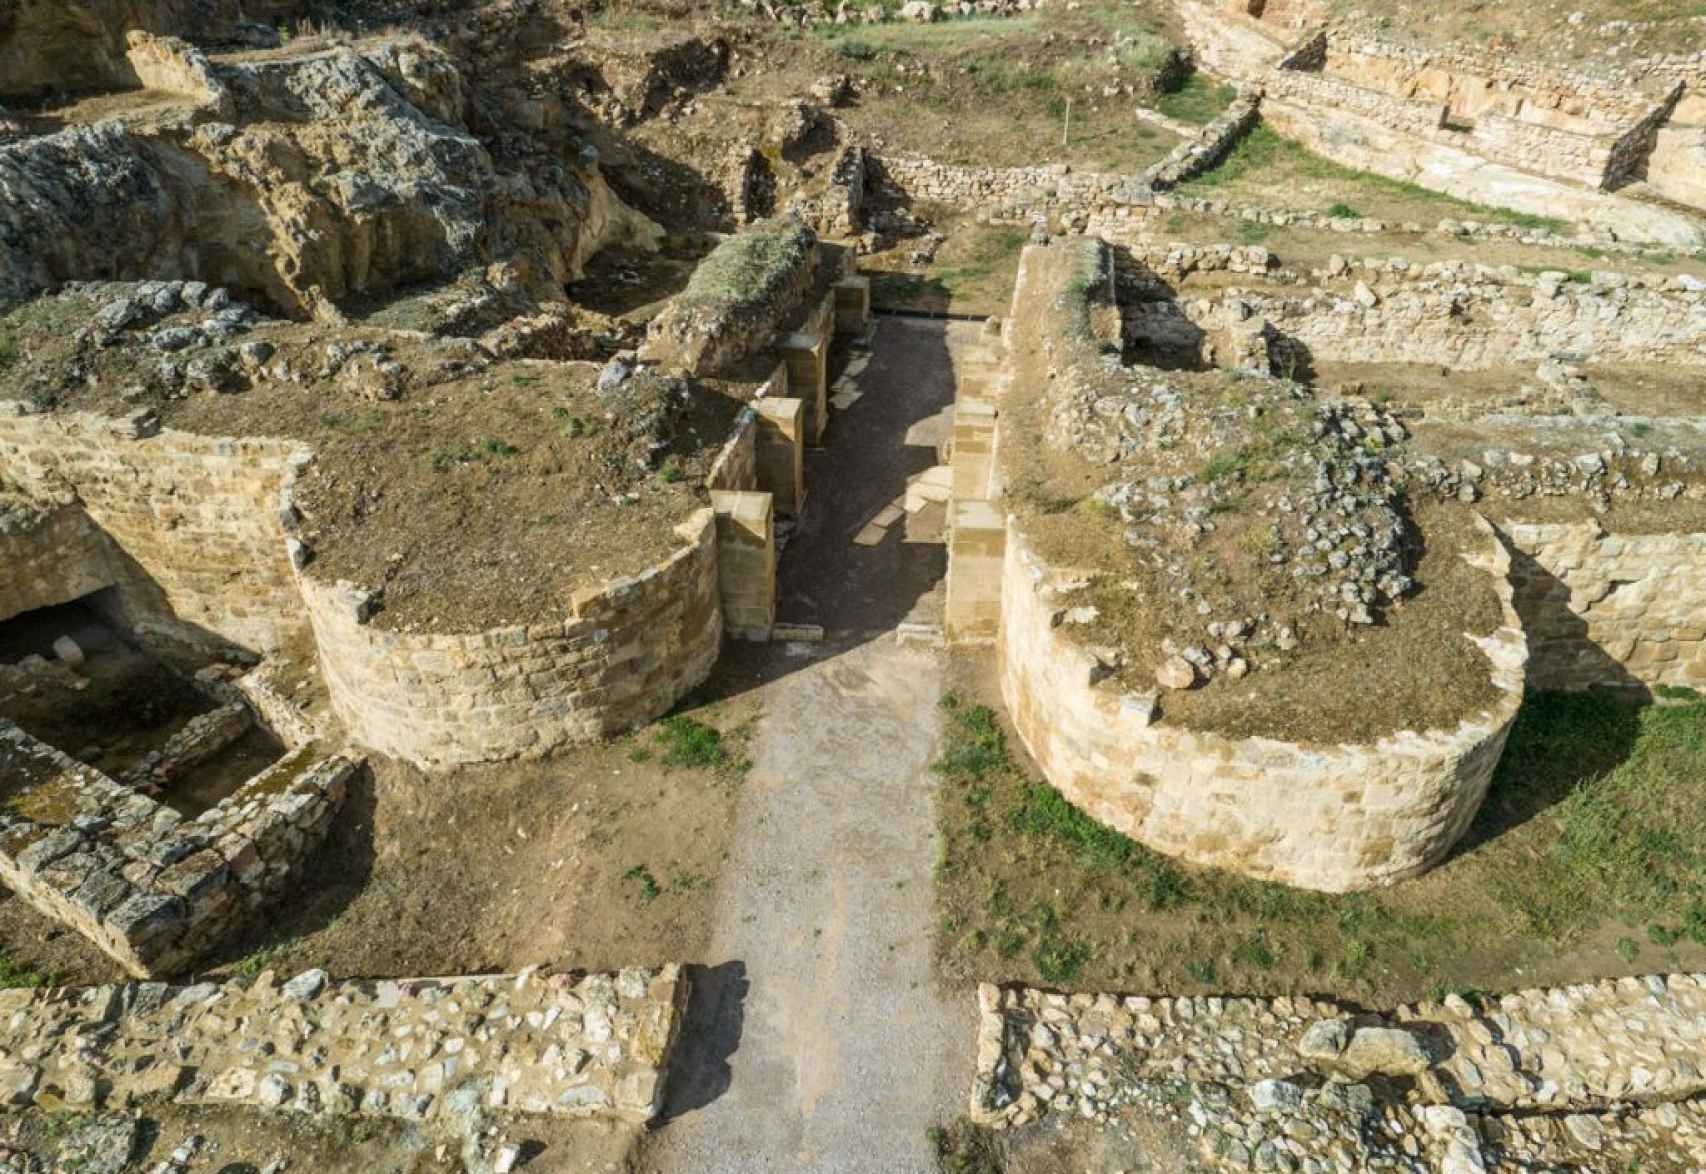 Restos de defensas romanas de época imperial sobre murallas indígenas